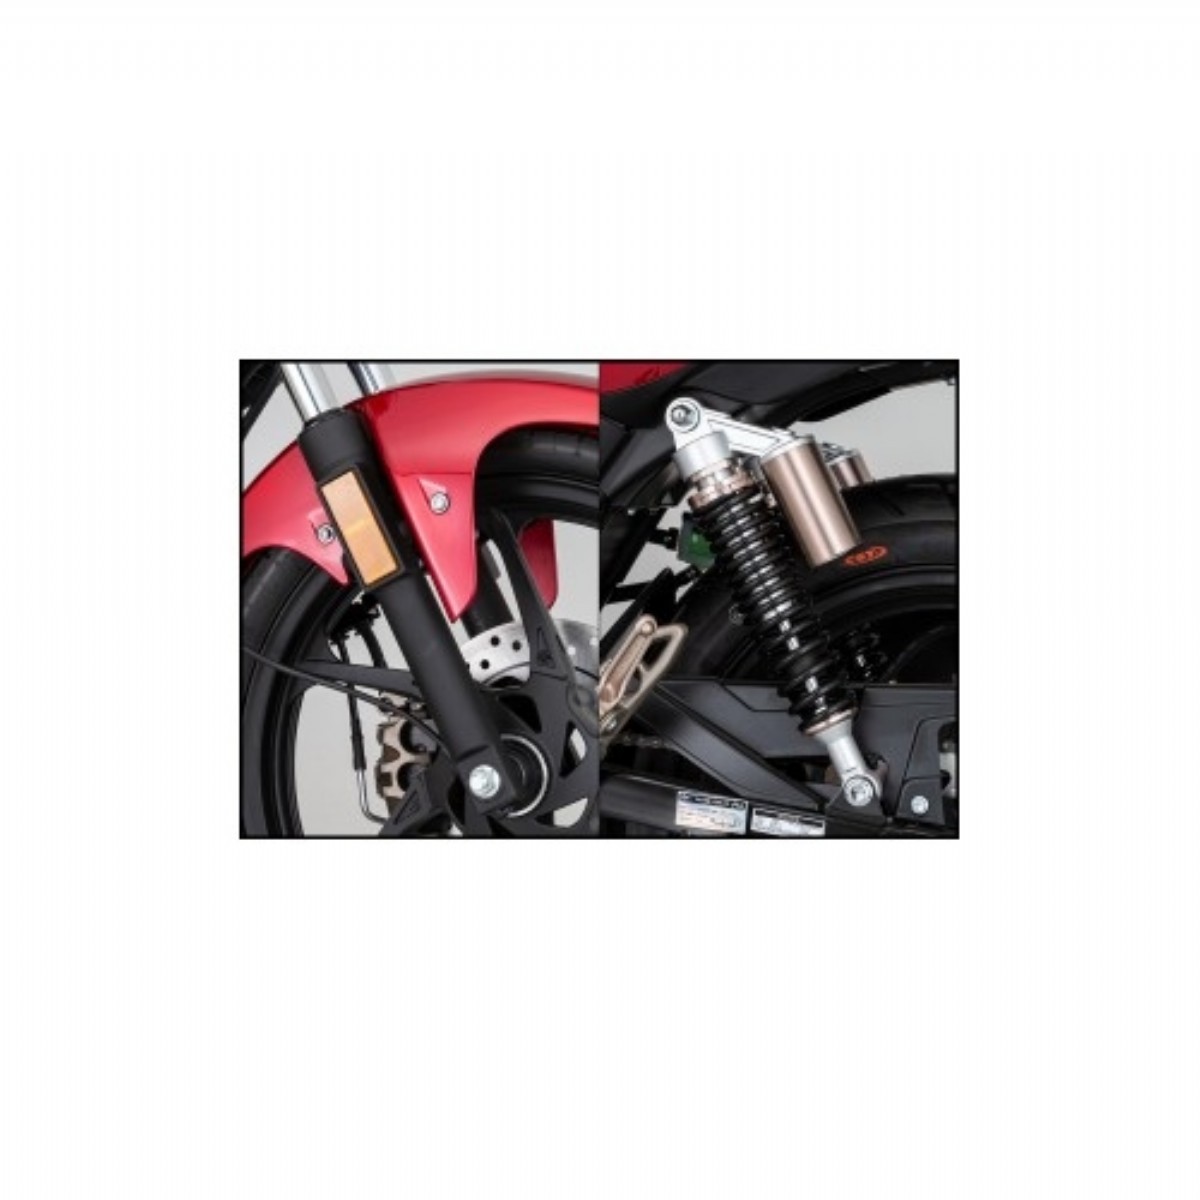 Motosikletler | Mondial 125 Drift L Cbs Siyah Motosiklet | M3MON1043A0005 | Mondial 125 Drift L Cbs Siyah Motosiklet motor motorsiklet | 